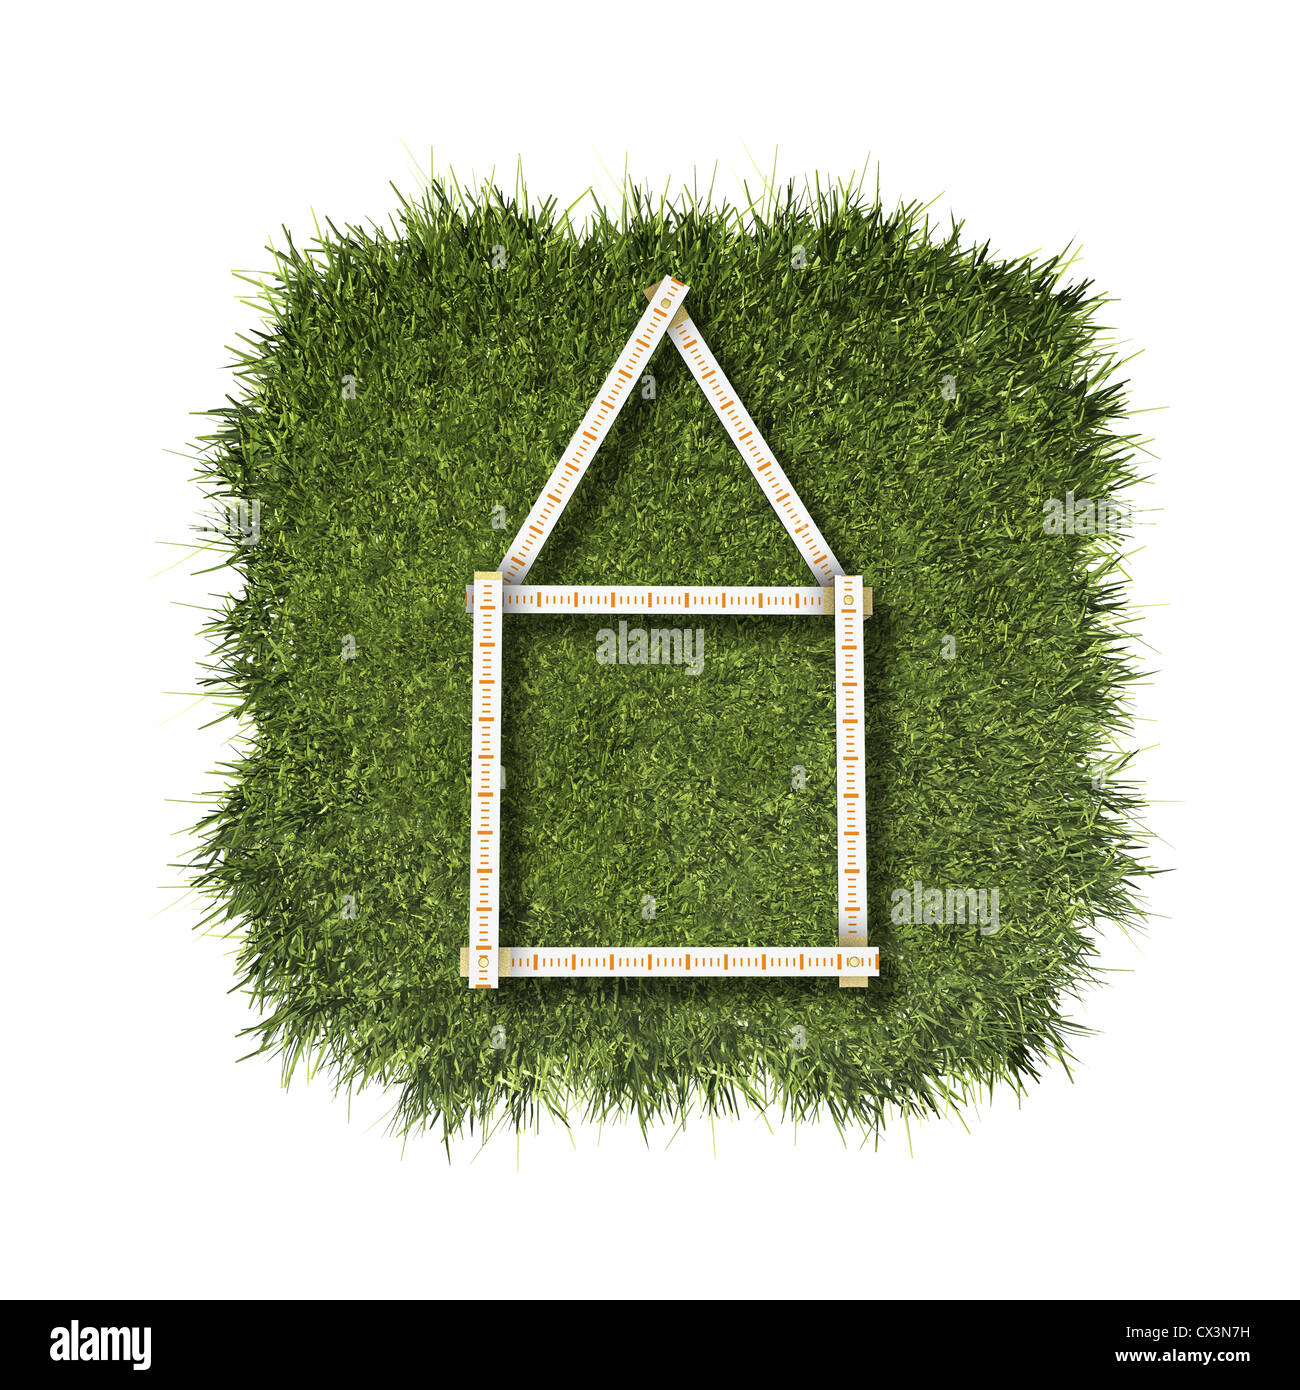 Falten in der Regel Haus am grünen Rasen - Zollstock, Haus aus Grünem Gras Auf Weissem Hintergrund- Stockfoto